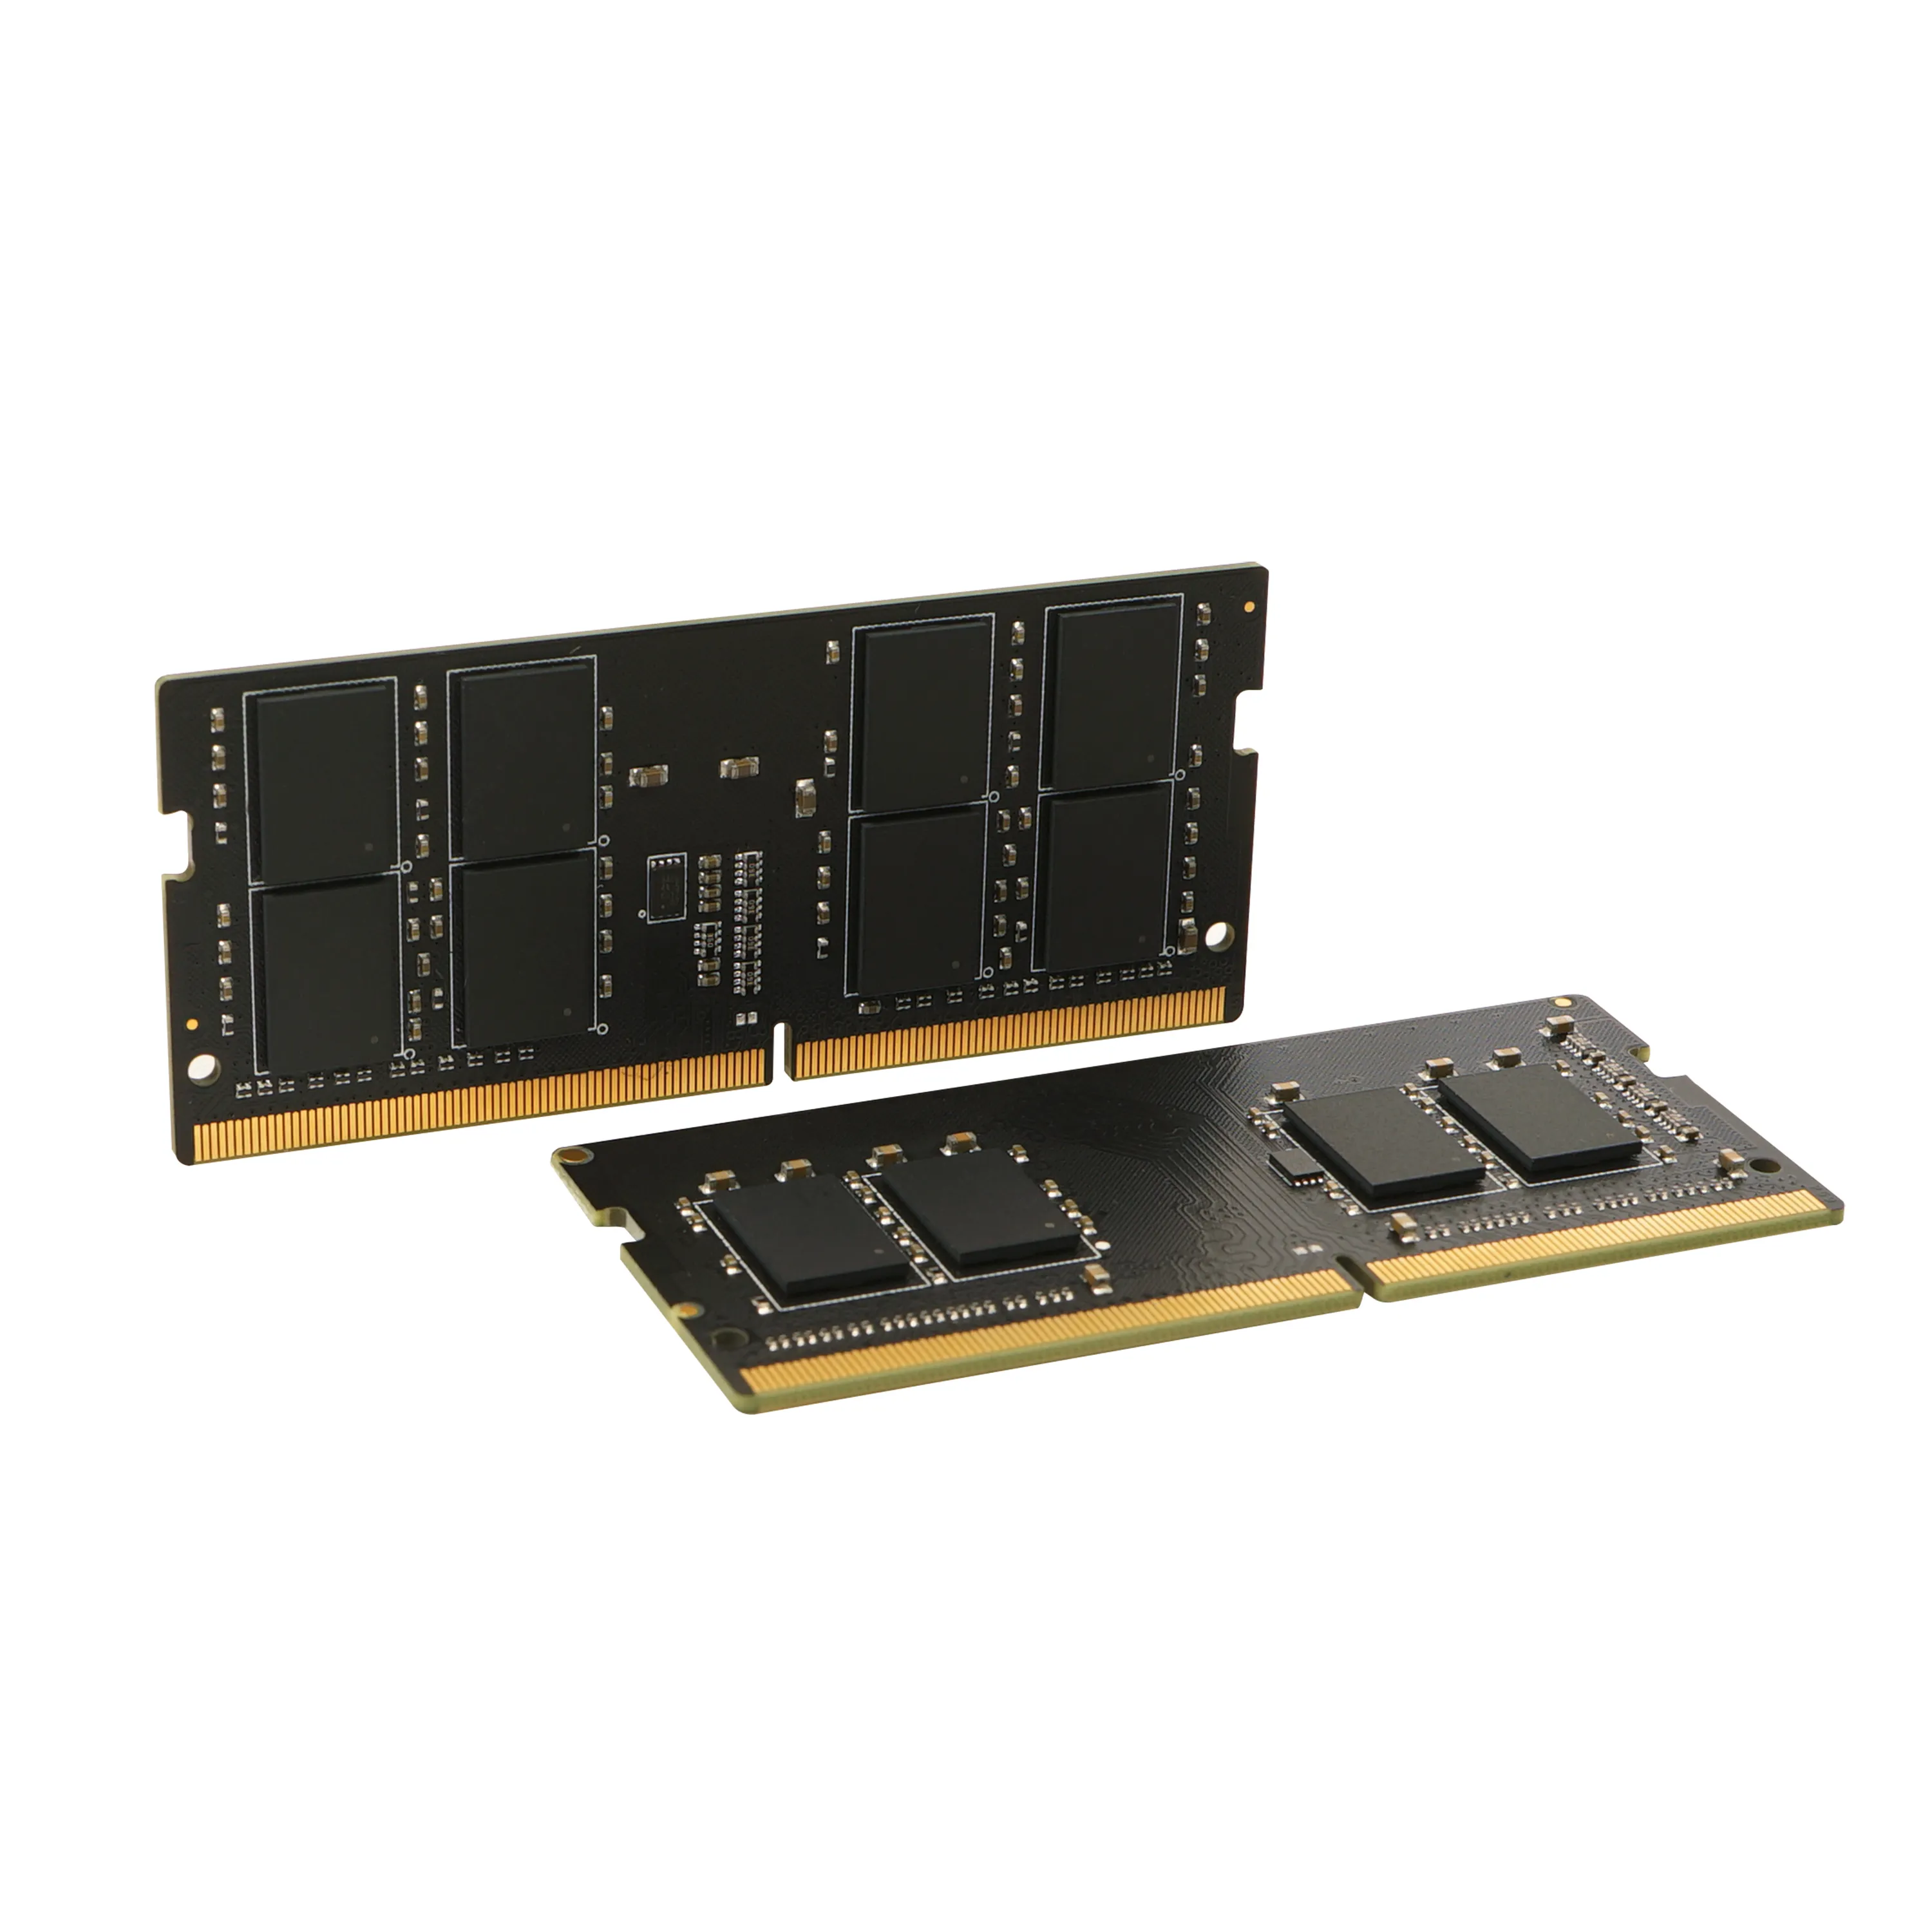 Vente SILICON POWER DDR4 16Go 2400MHz CL17 SO-DIMM 1 Silicon Power au meilleur prix - visuel 6